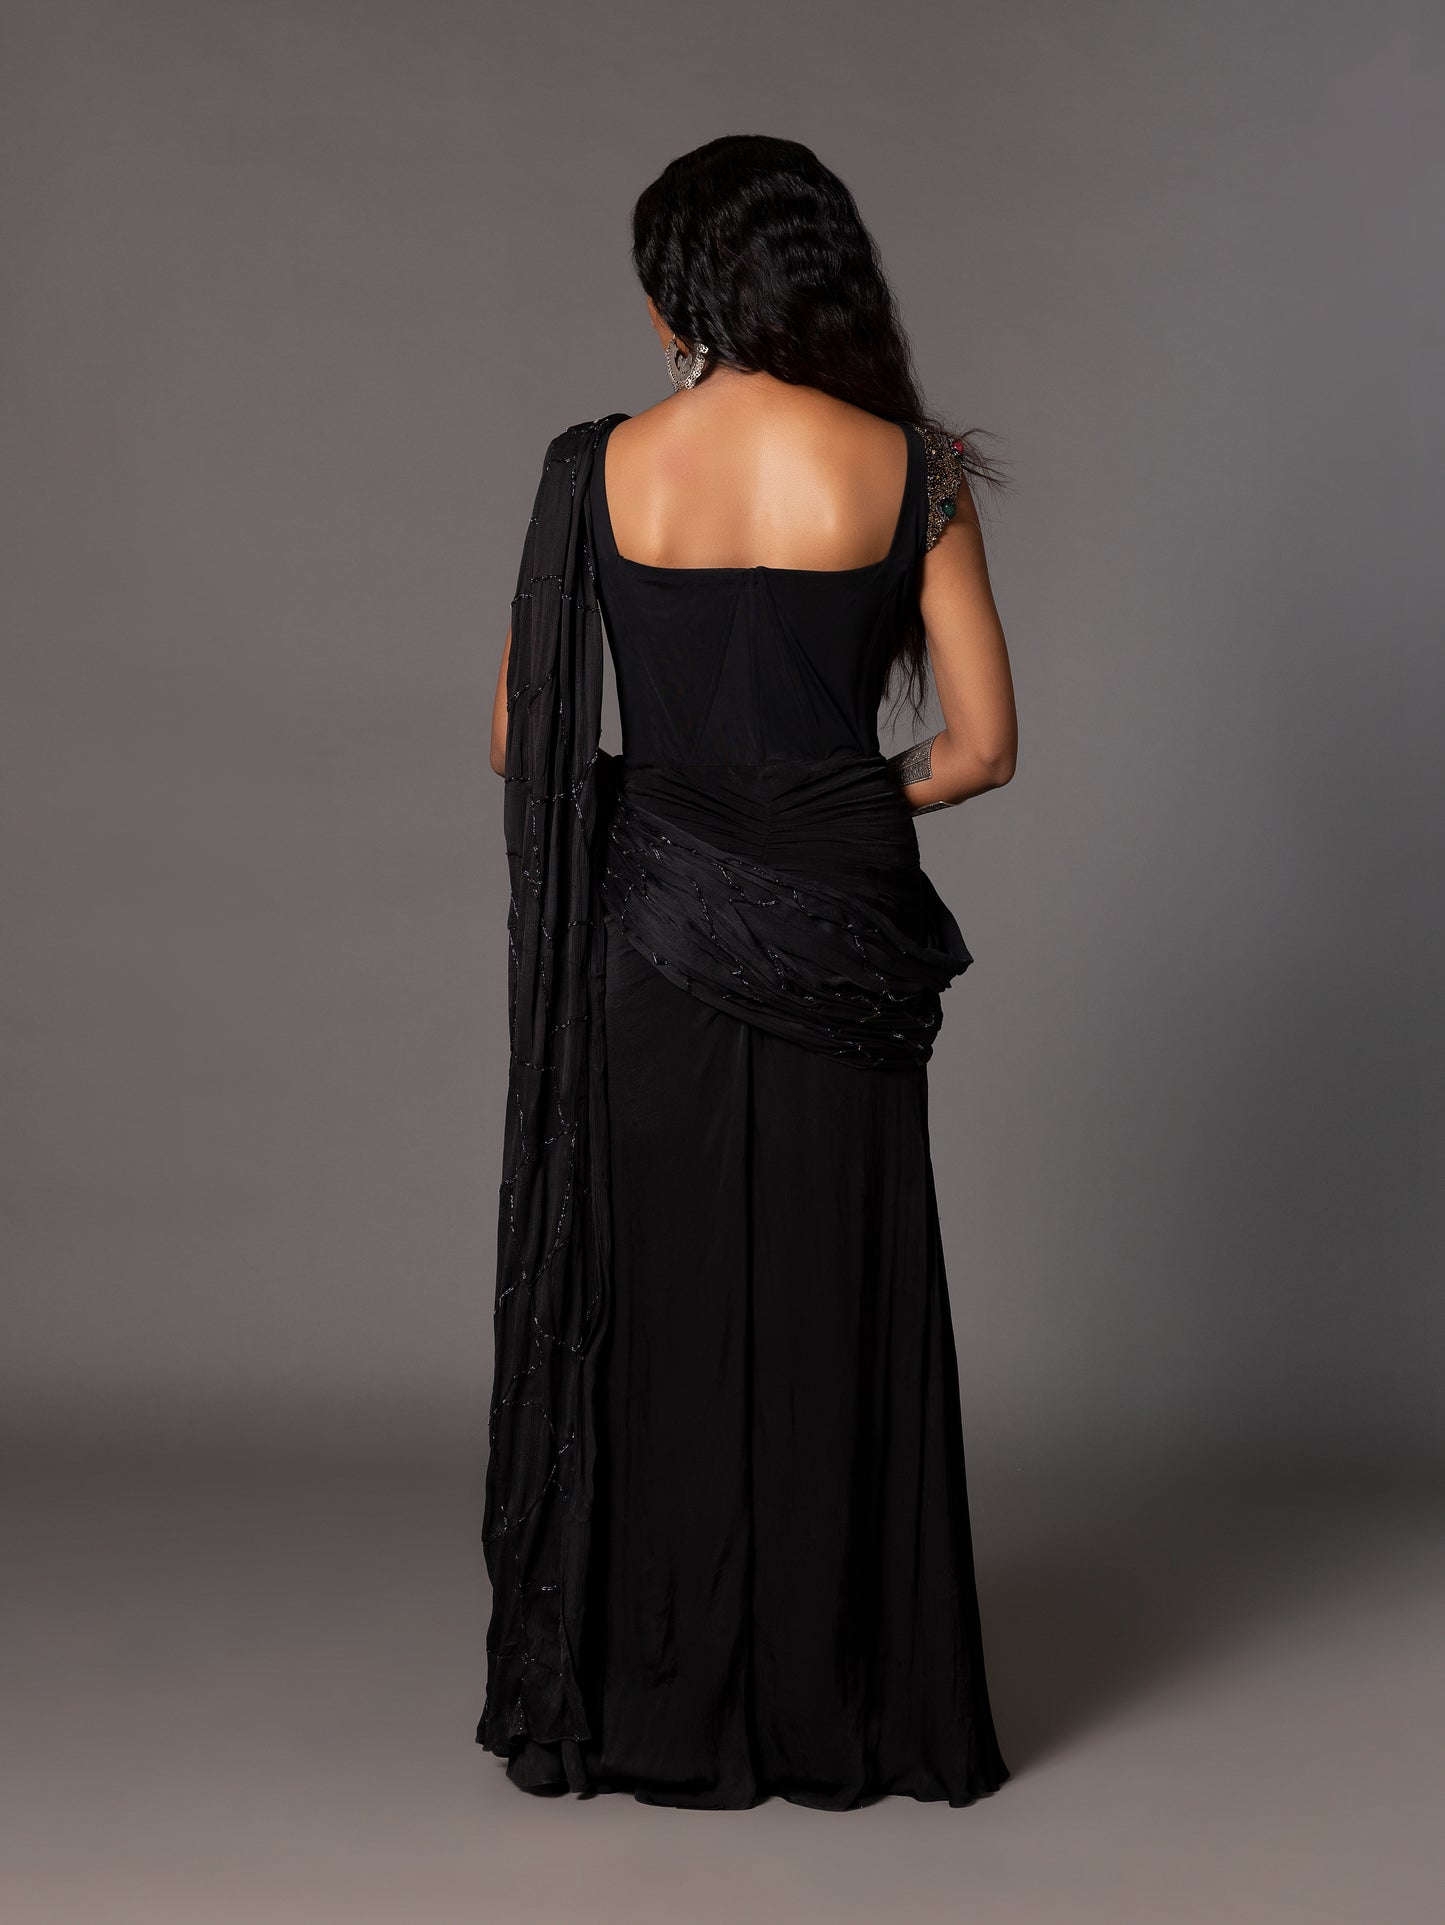 Kalbeliya Black Corset Sari With Belt